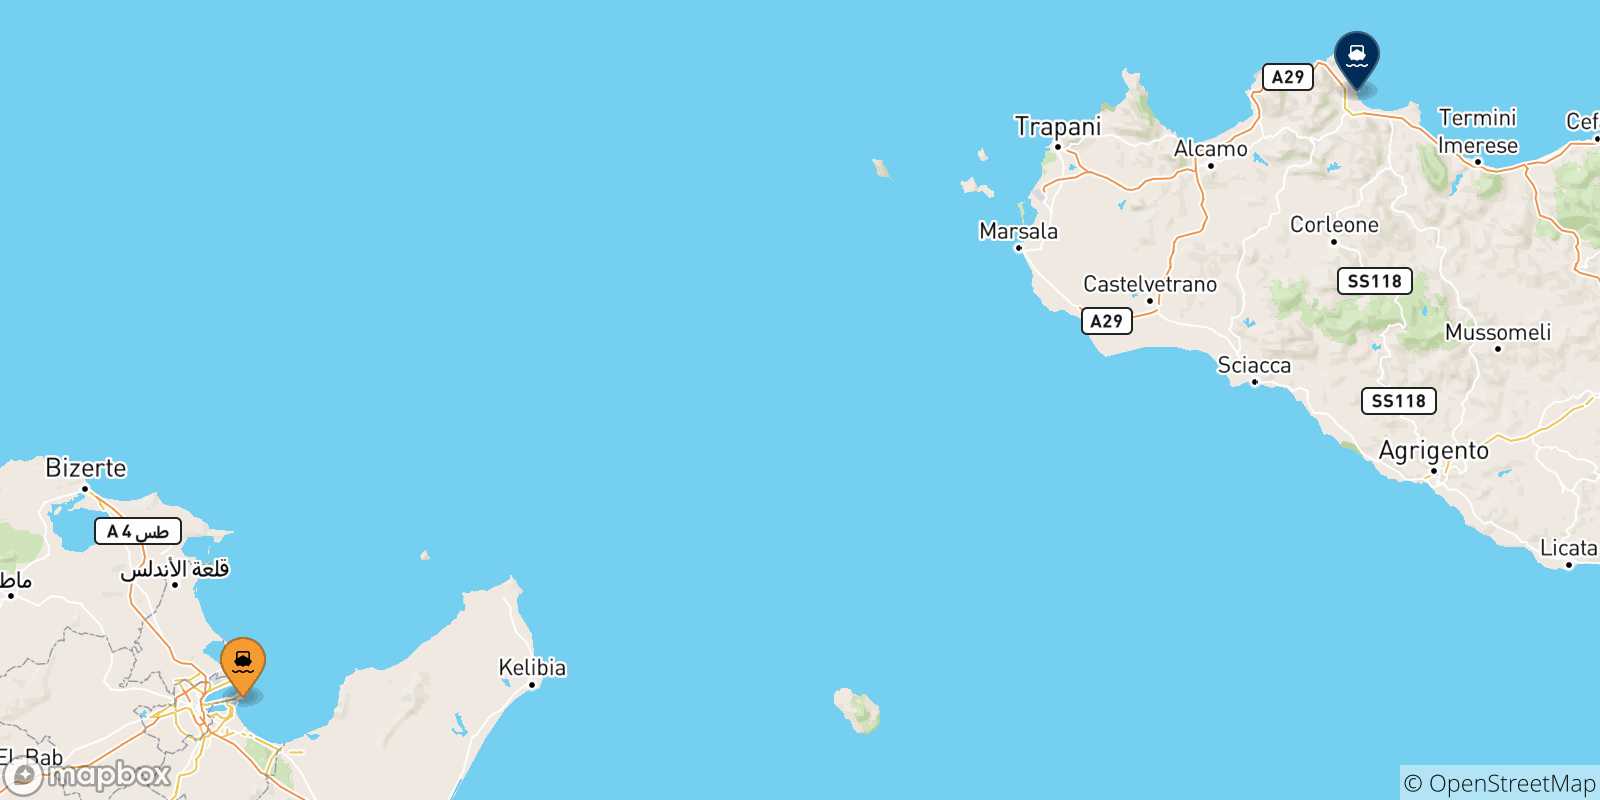 Mappa delle possibili rotte tra la Tunisia e la Sicilia